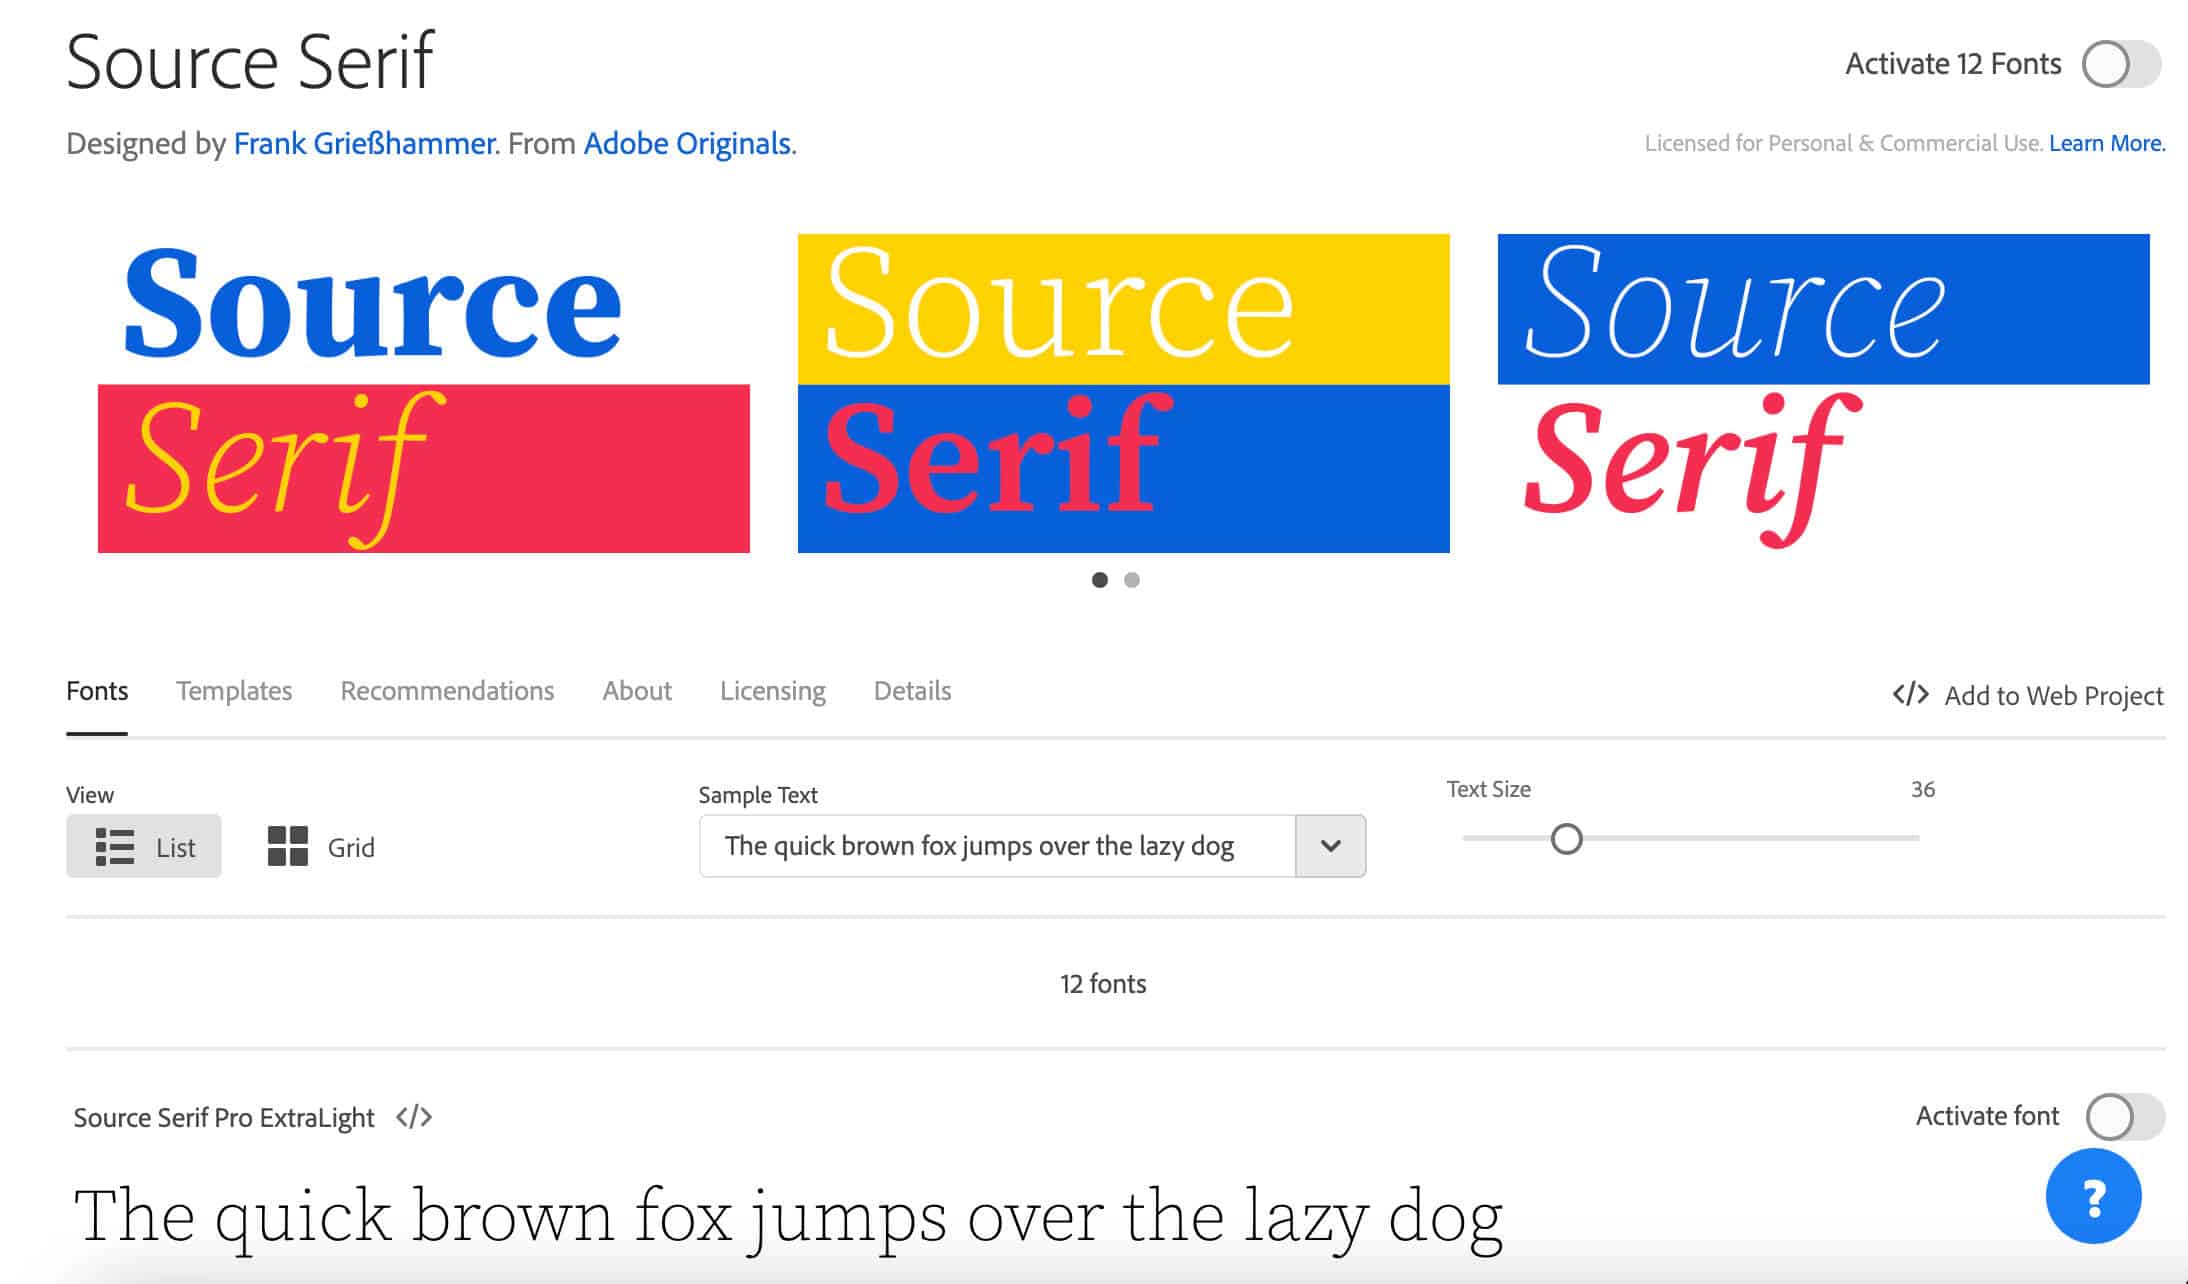 Vista previa de Source Serif Pro en fonts.adobe.com